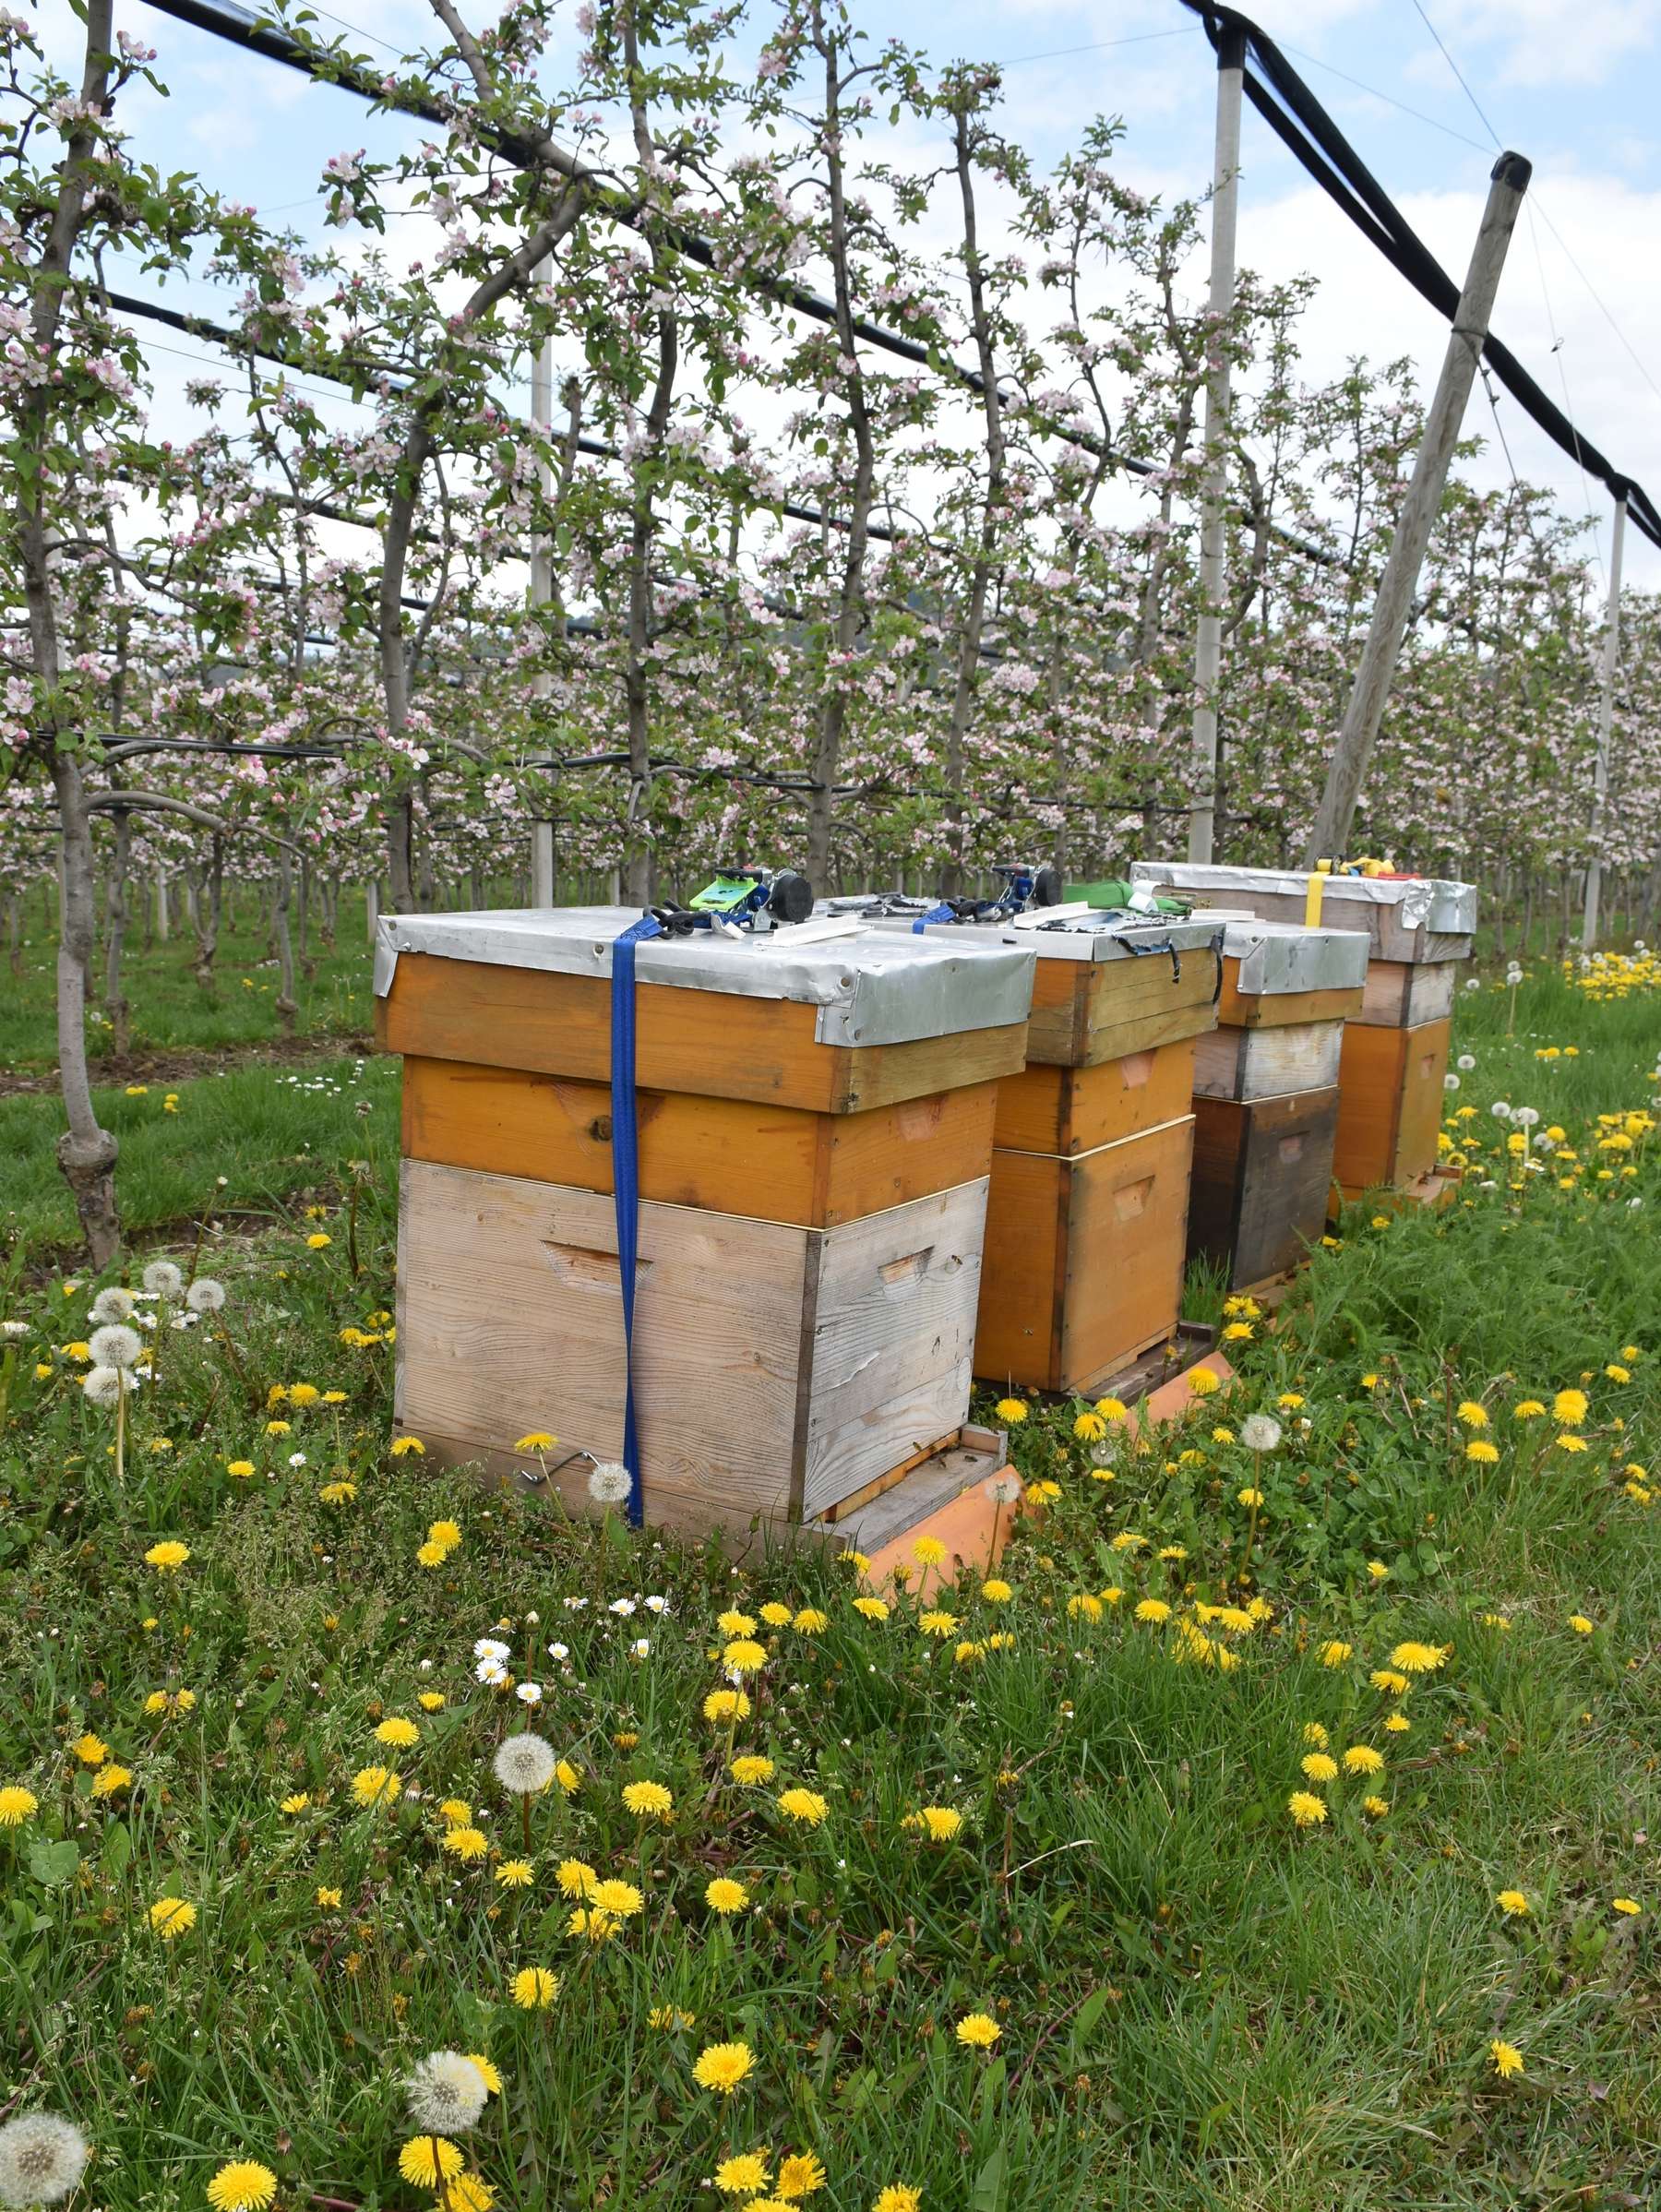 Bestäubungsvölker in einer Apfelplantage, (c) Bienenzentrum OÖ.jpg